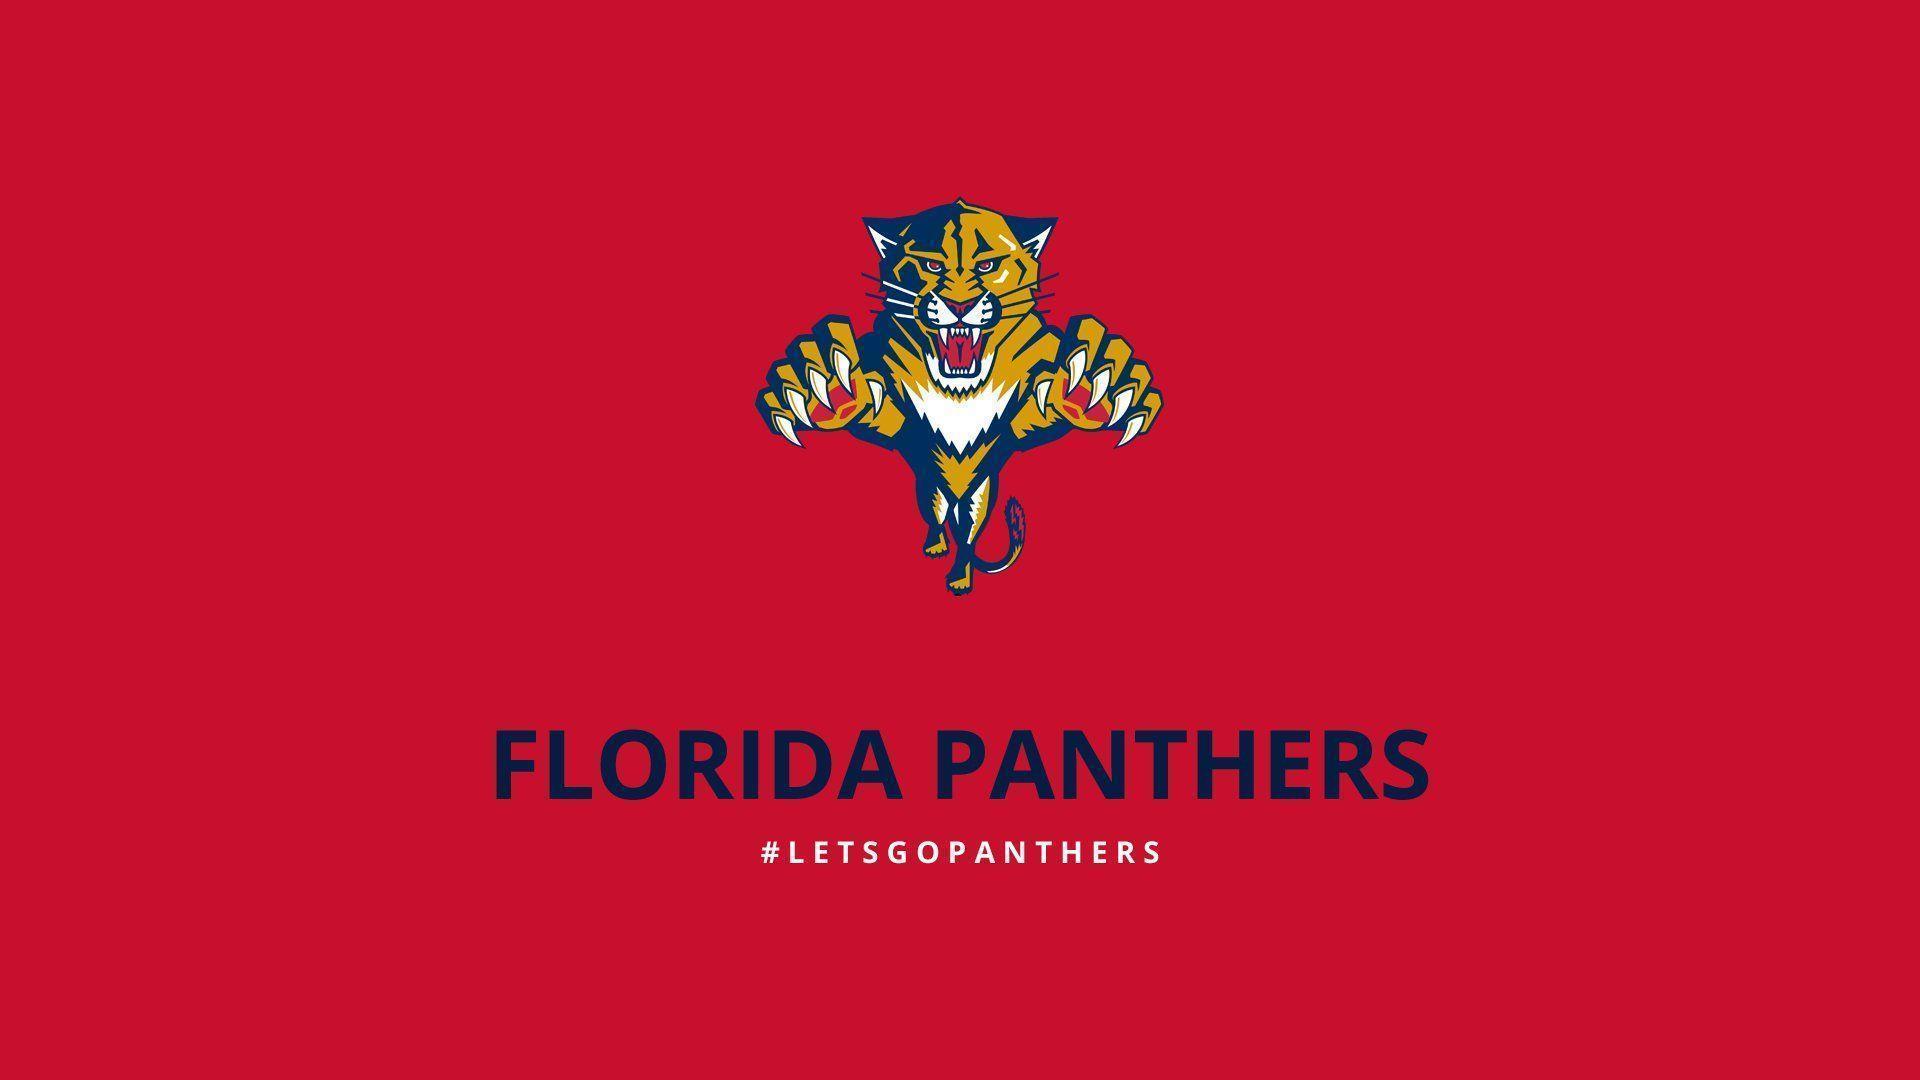 Stunning Wallpaper: Florida Panthers Wallpaper, Amazing Florida